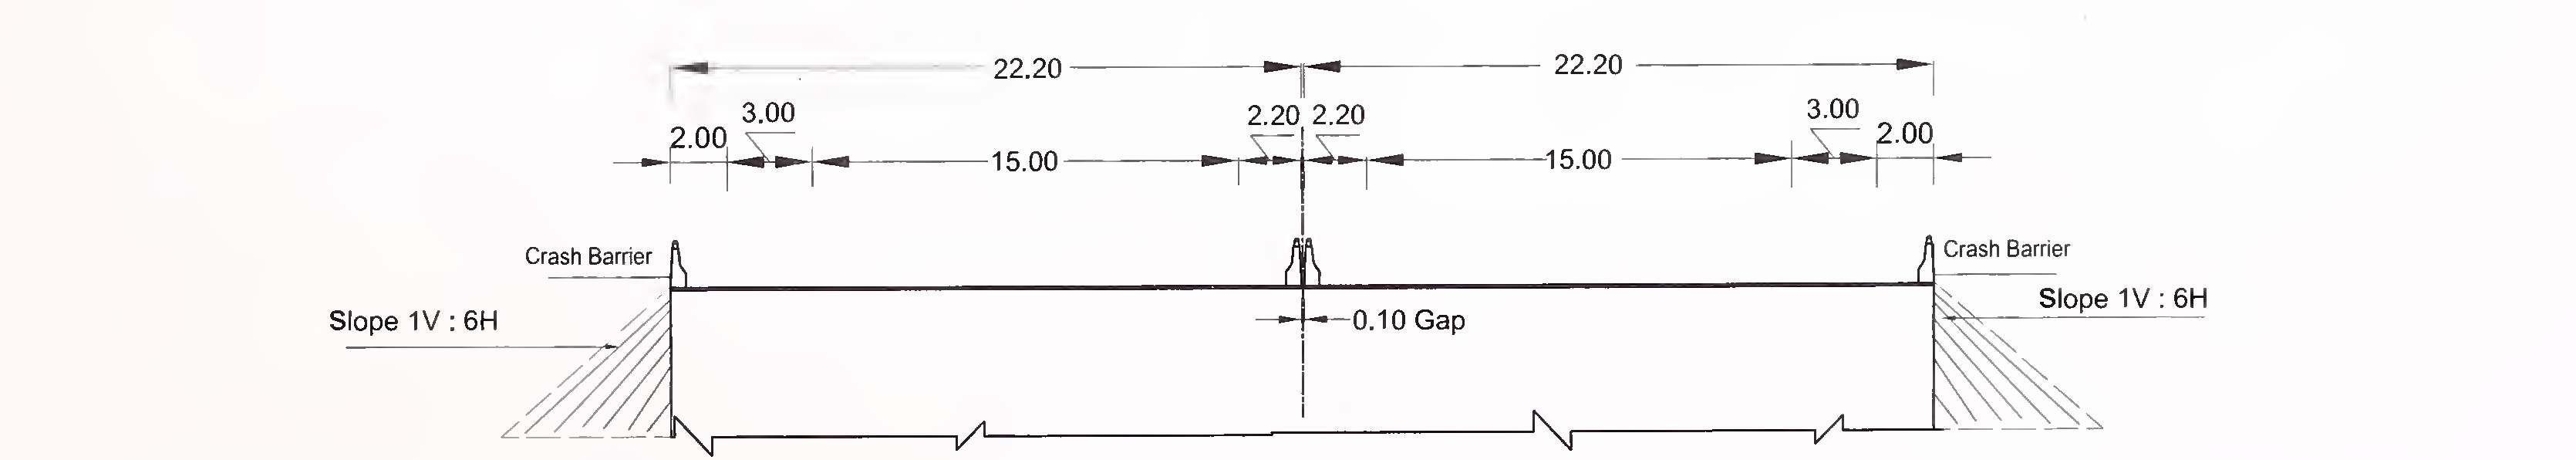 ફિગ .6.4 (સી) ફ્લશ મેડિયનવાળા 8-લેન (2 × 4) એક્સપ્રેસ હાઇવે માટે સ્લેબ અને બ withક્સ ટાઇપ કલ્વરટનો લાક્ષણિક ક્રોસ-સેક્શન